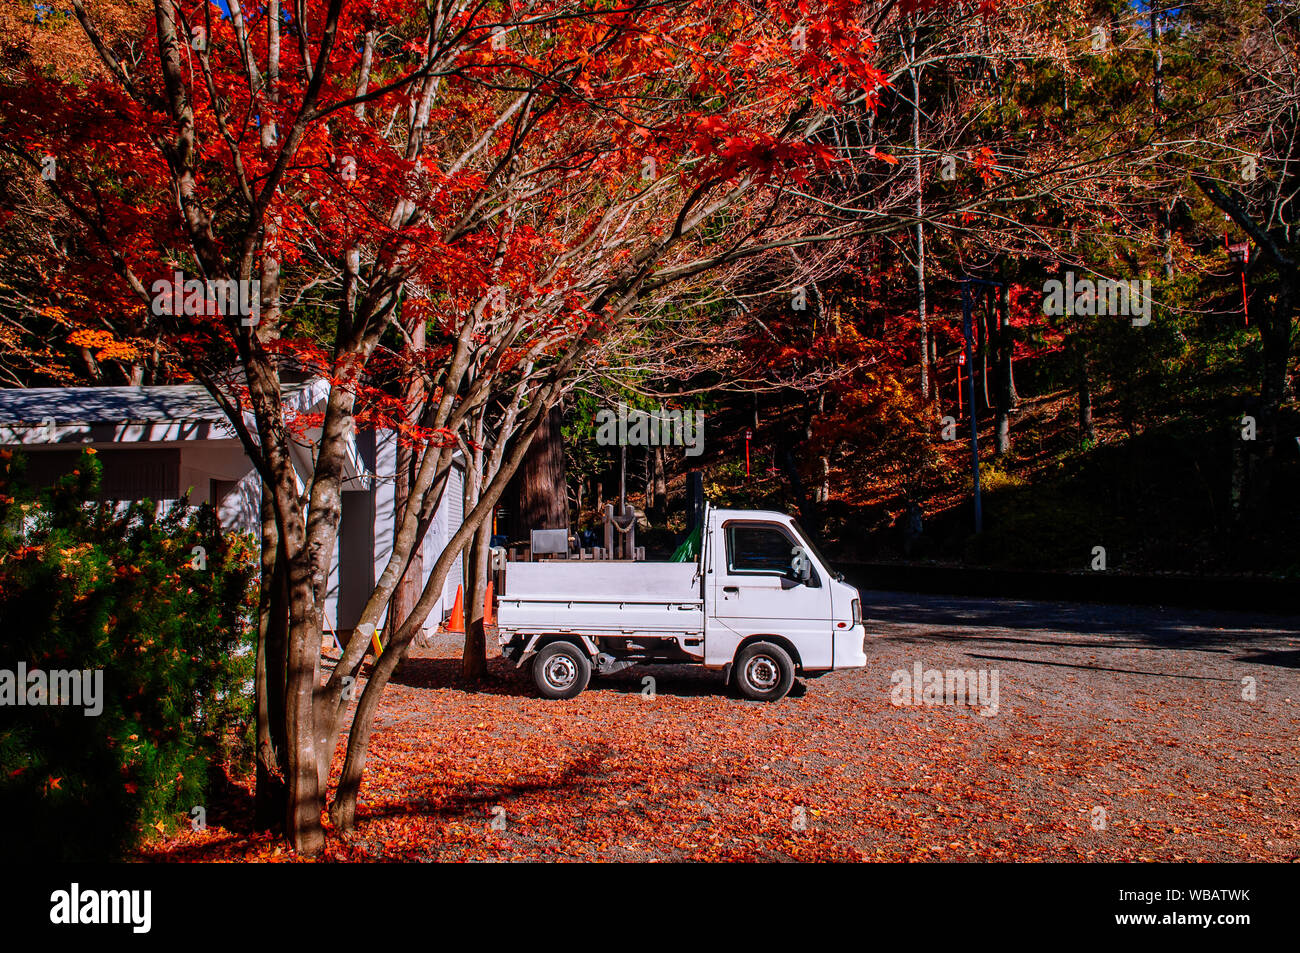 Leuchtend rote Herbst Ahorn und weißen Pickup truck in der Chureito Pagode Arakurayama Sengen Park in Fujiyoshida Shimoyoshida - Stockfoto